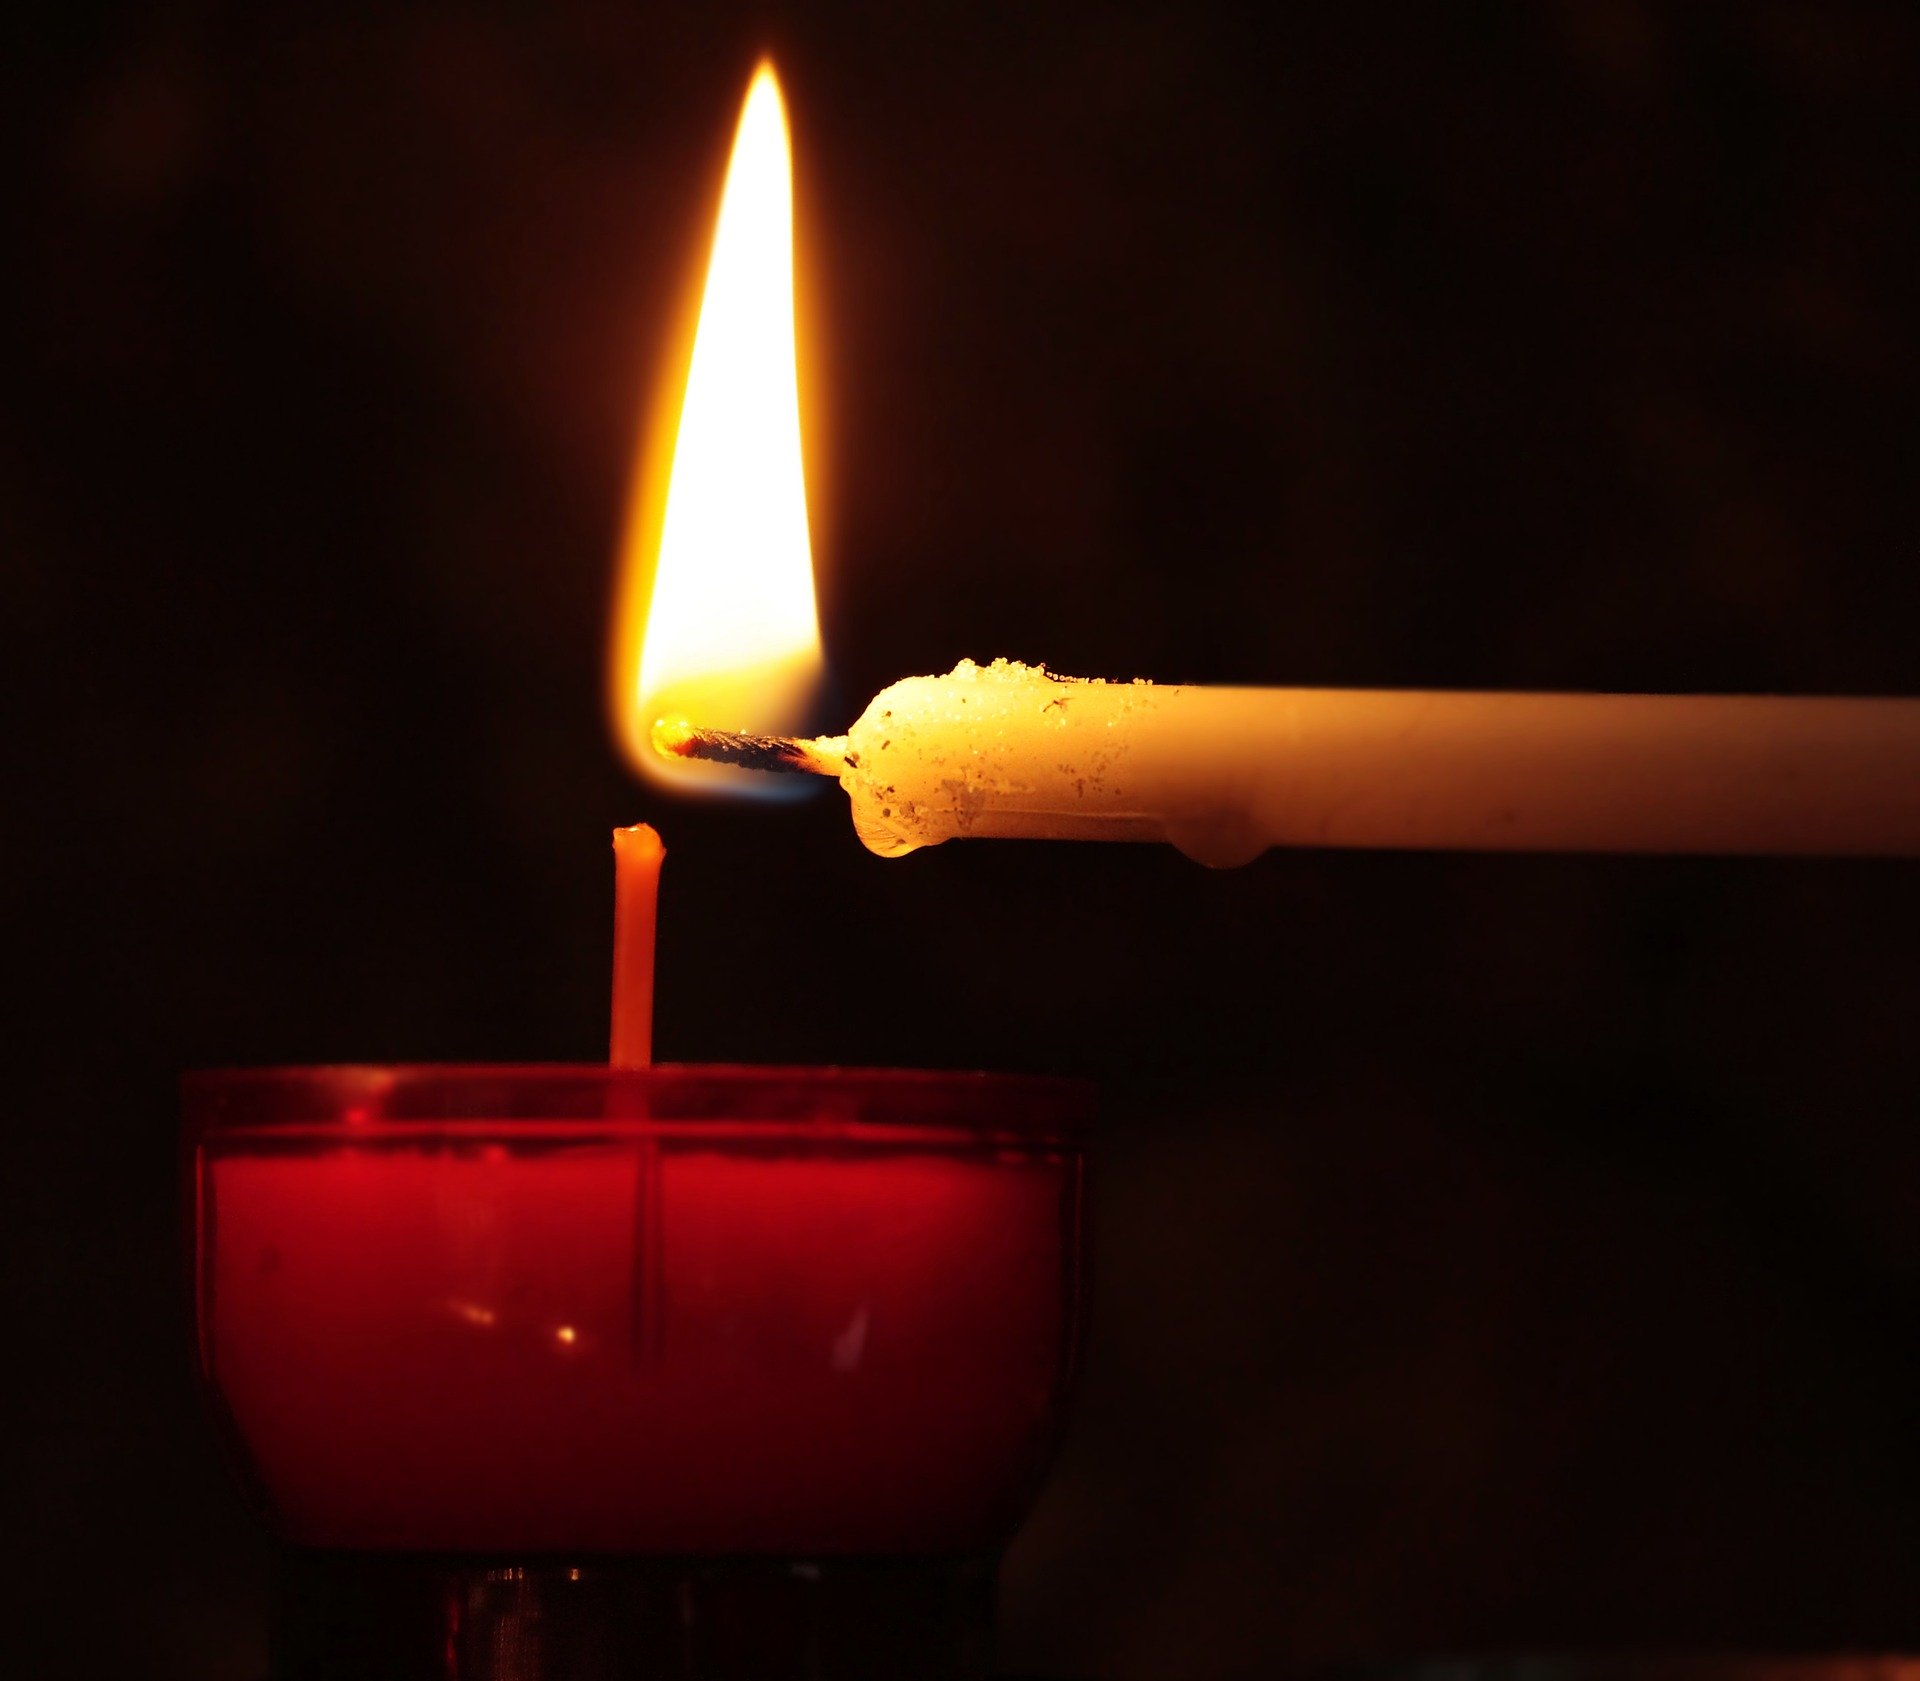 Kerze anzünden (c) Bild von S. Hermann & F. Richter auf Pixabay